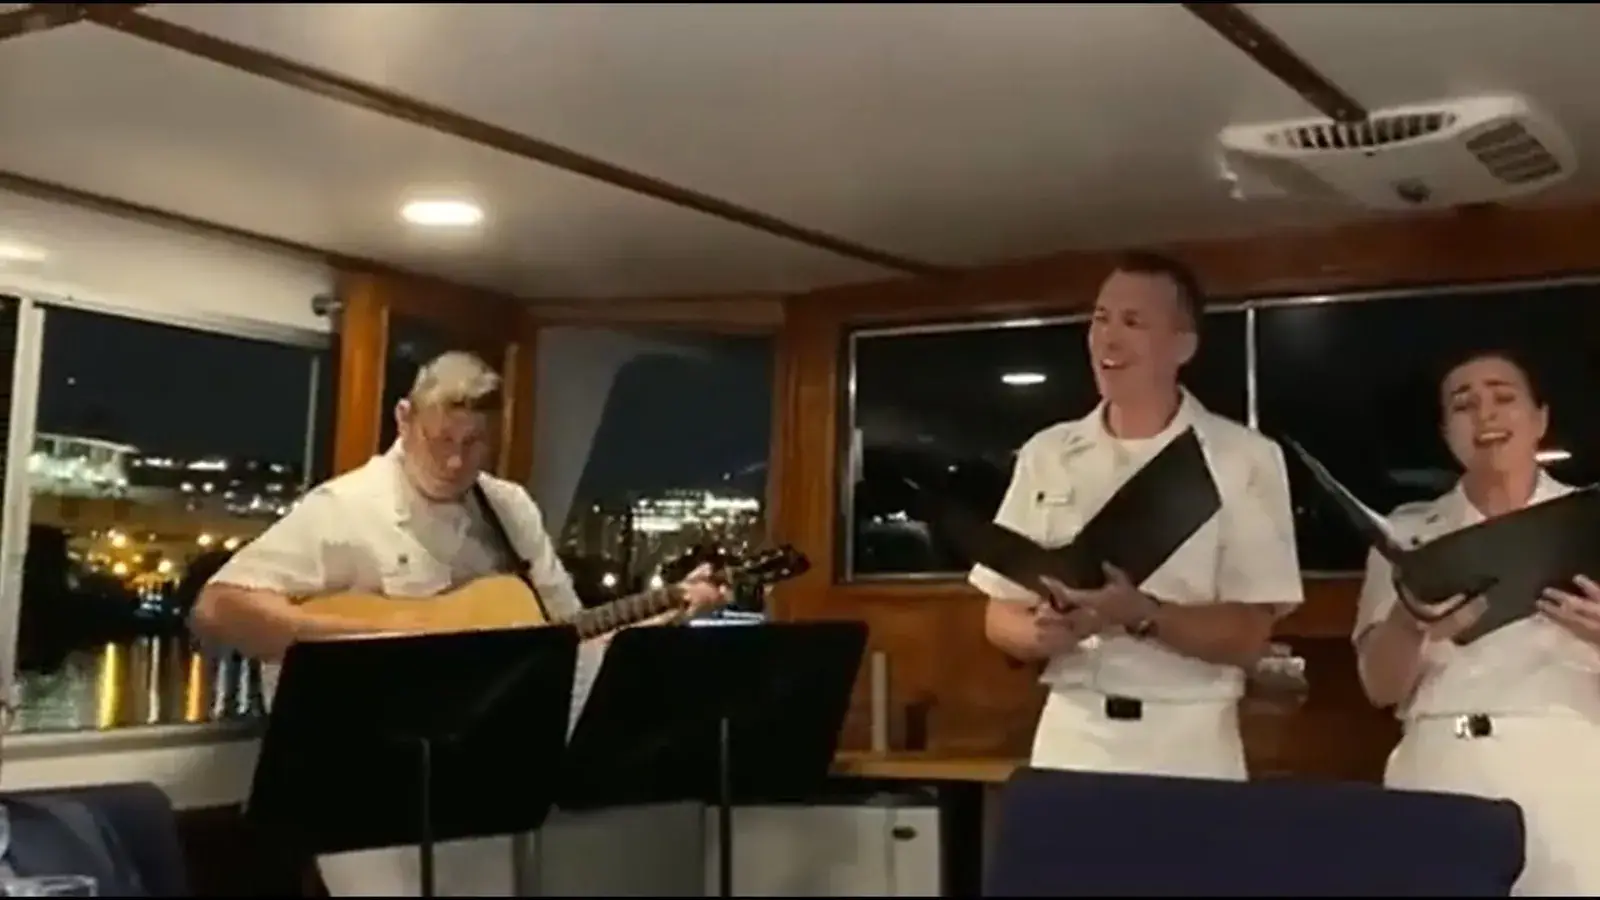  करण जौहर ने अमेरिकी नौसेना के अधिकारियों को रात के खाने में कल हो ना हो गीत का प्रदर्शन करने पर प्रतिक्रिया दी |  बॉलीवुड
